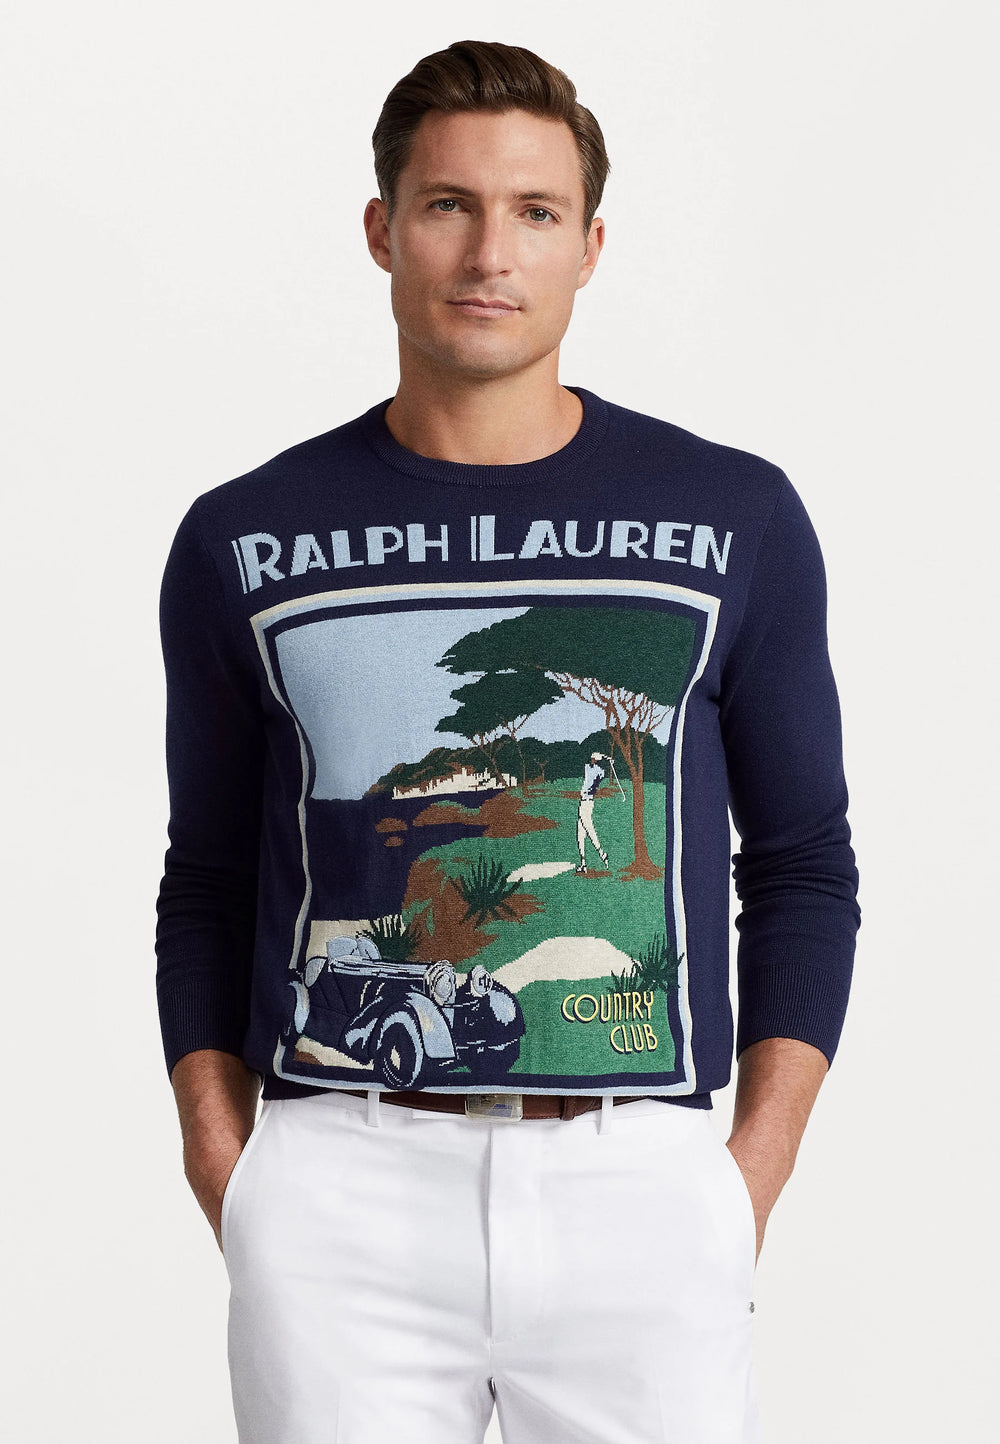 Ralph Lauren pullover long sleeve